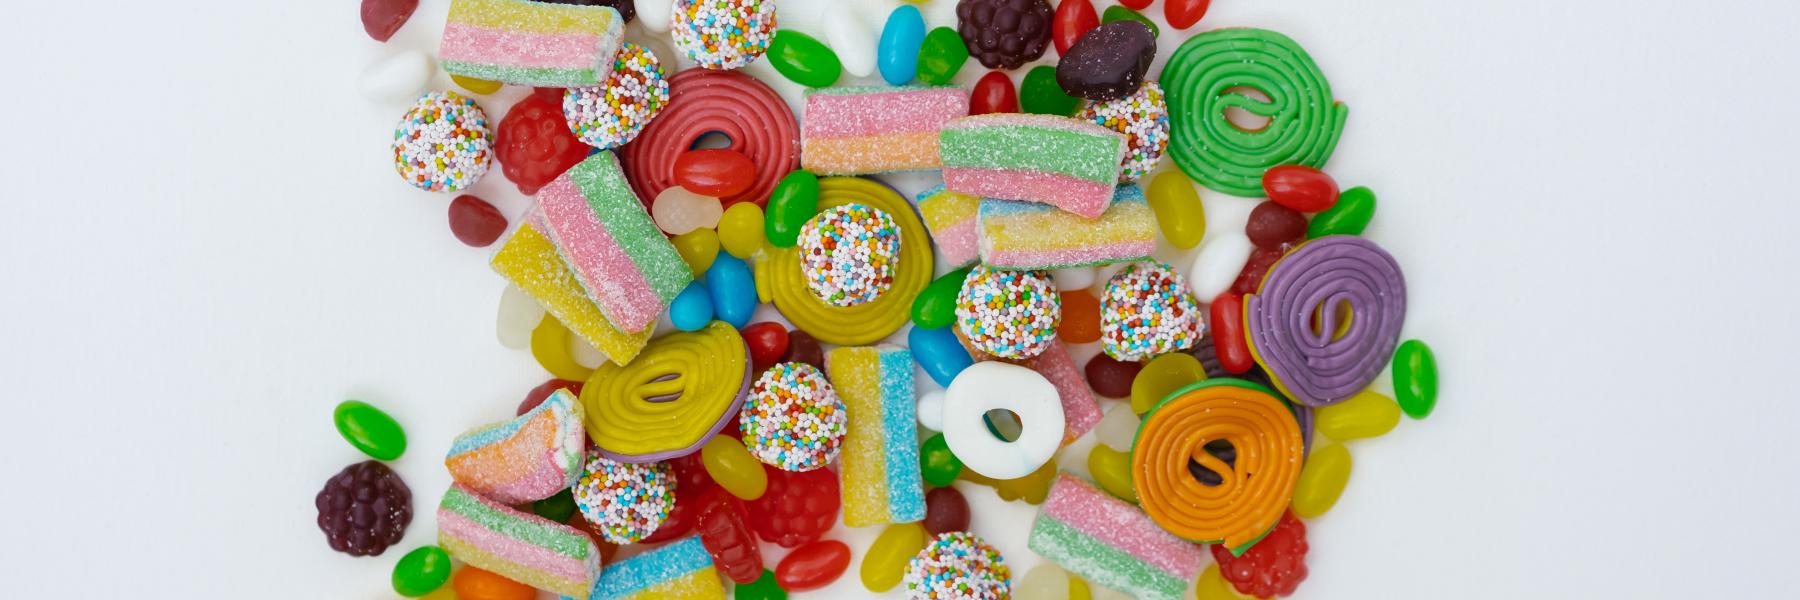 7 أسباب توضّح لماذا الكثير من السكر يضر بالصحة